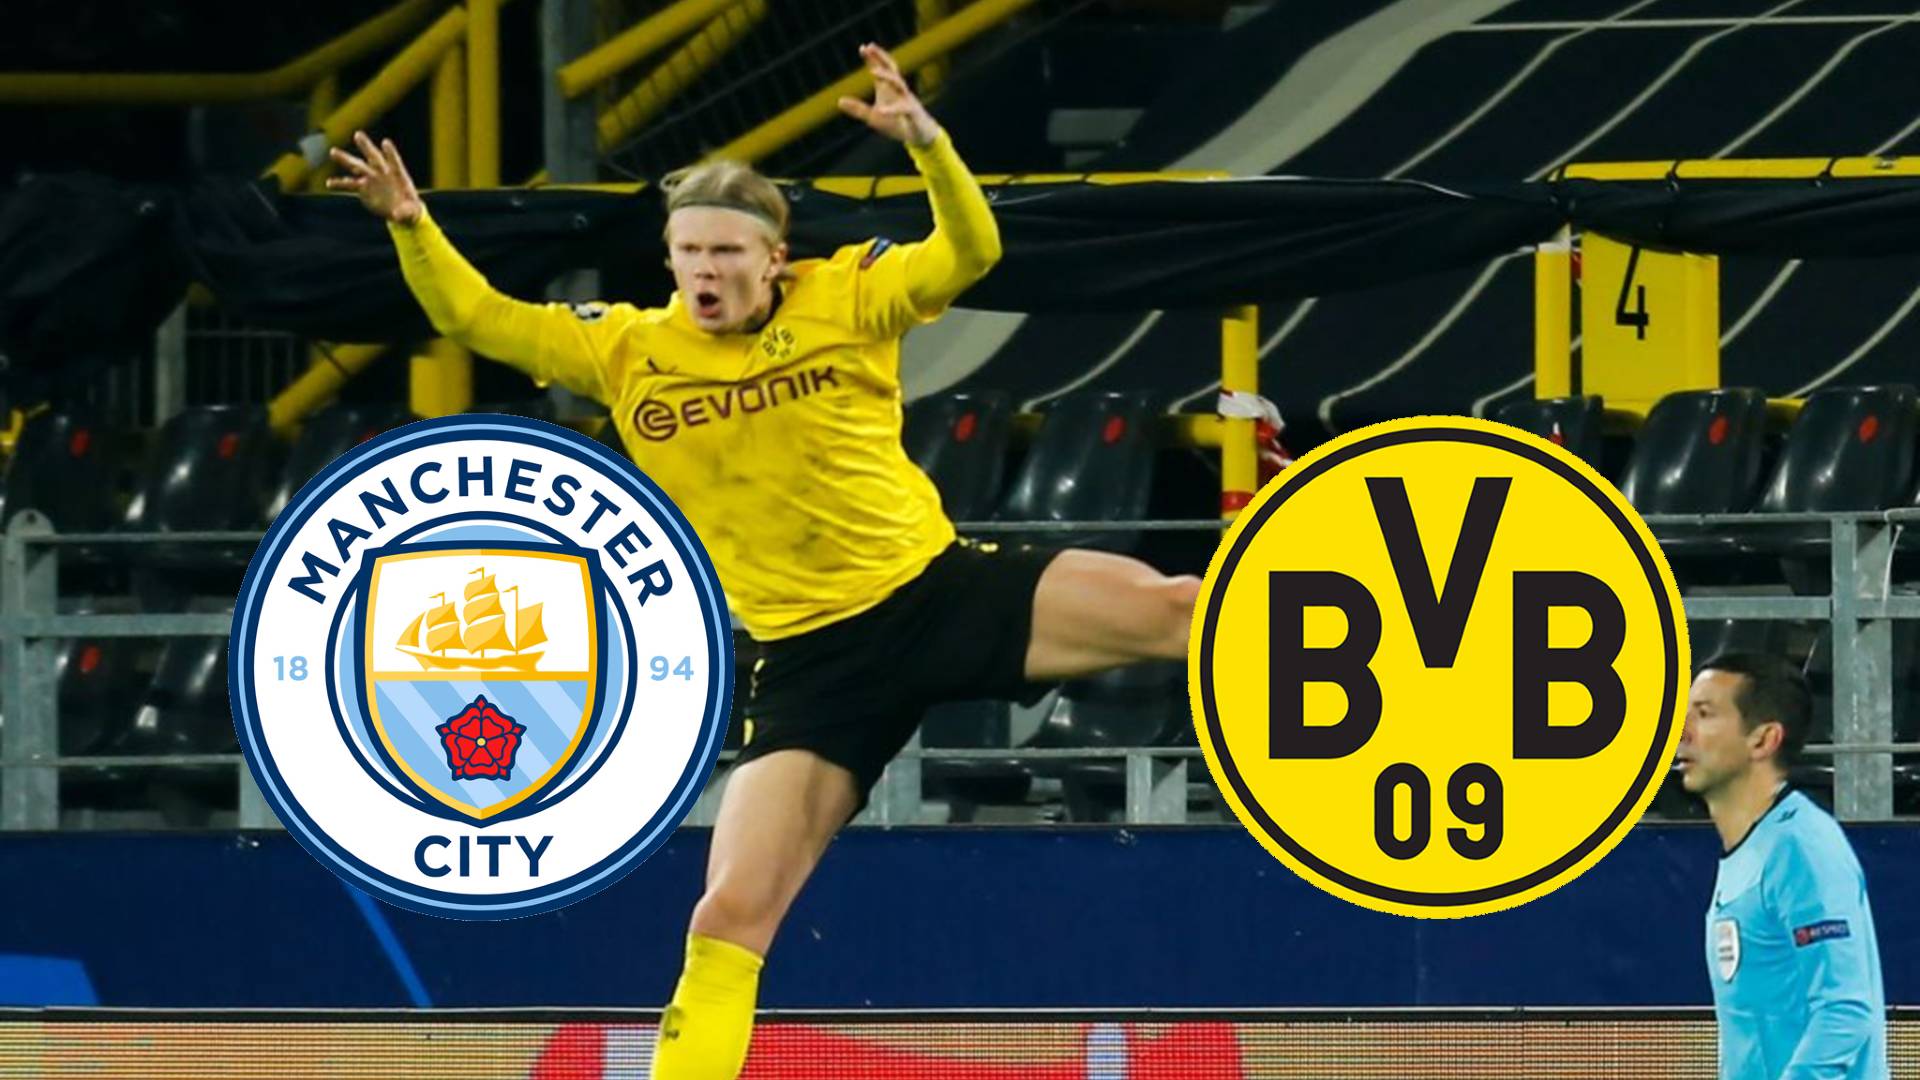 Champions League live auf DAZN BVB (Borussia Dortmund) bei Manchester City im TV und Livestream Goal Deutschland